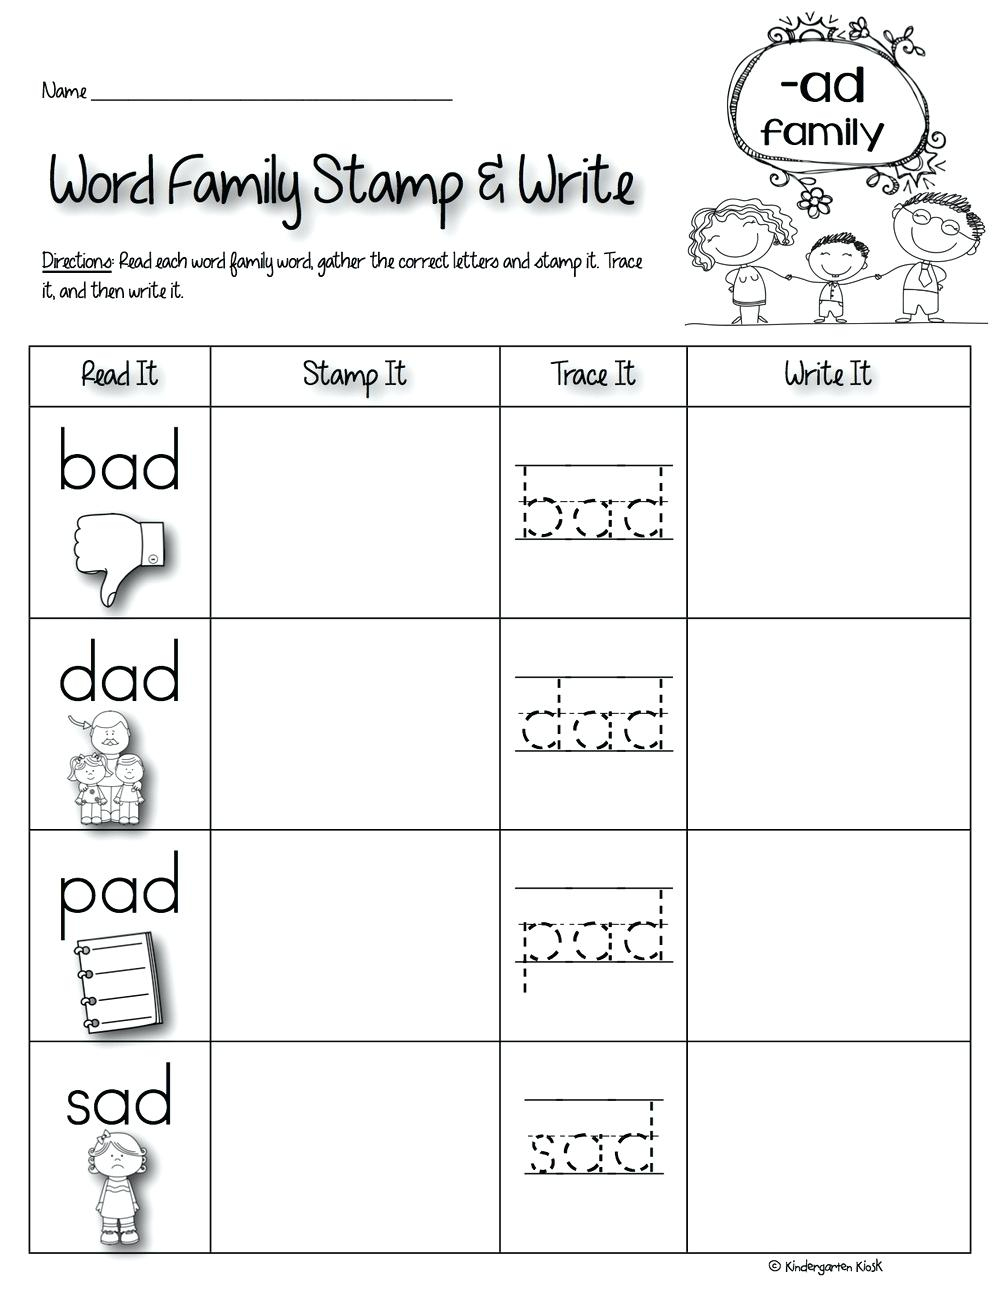 Ad Family Worksheets For Family Theme Preschool And Family - Free Printable Word Family Worksheets For Kindergarten